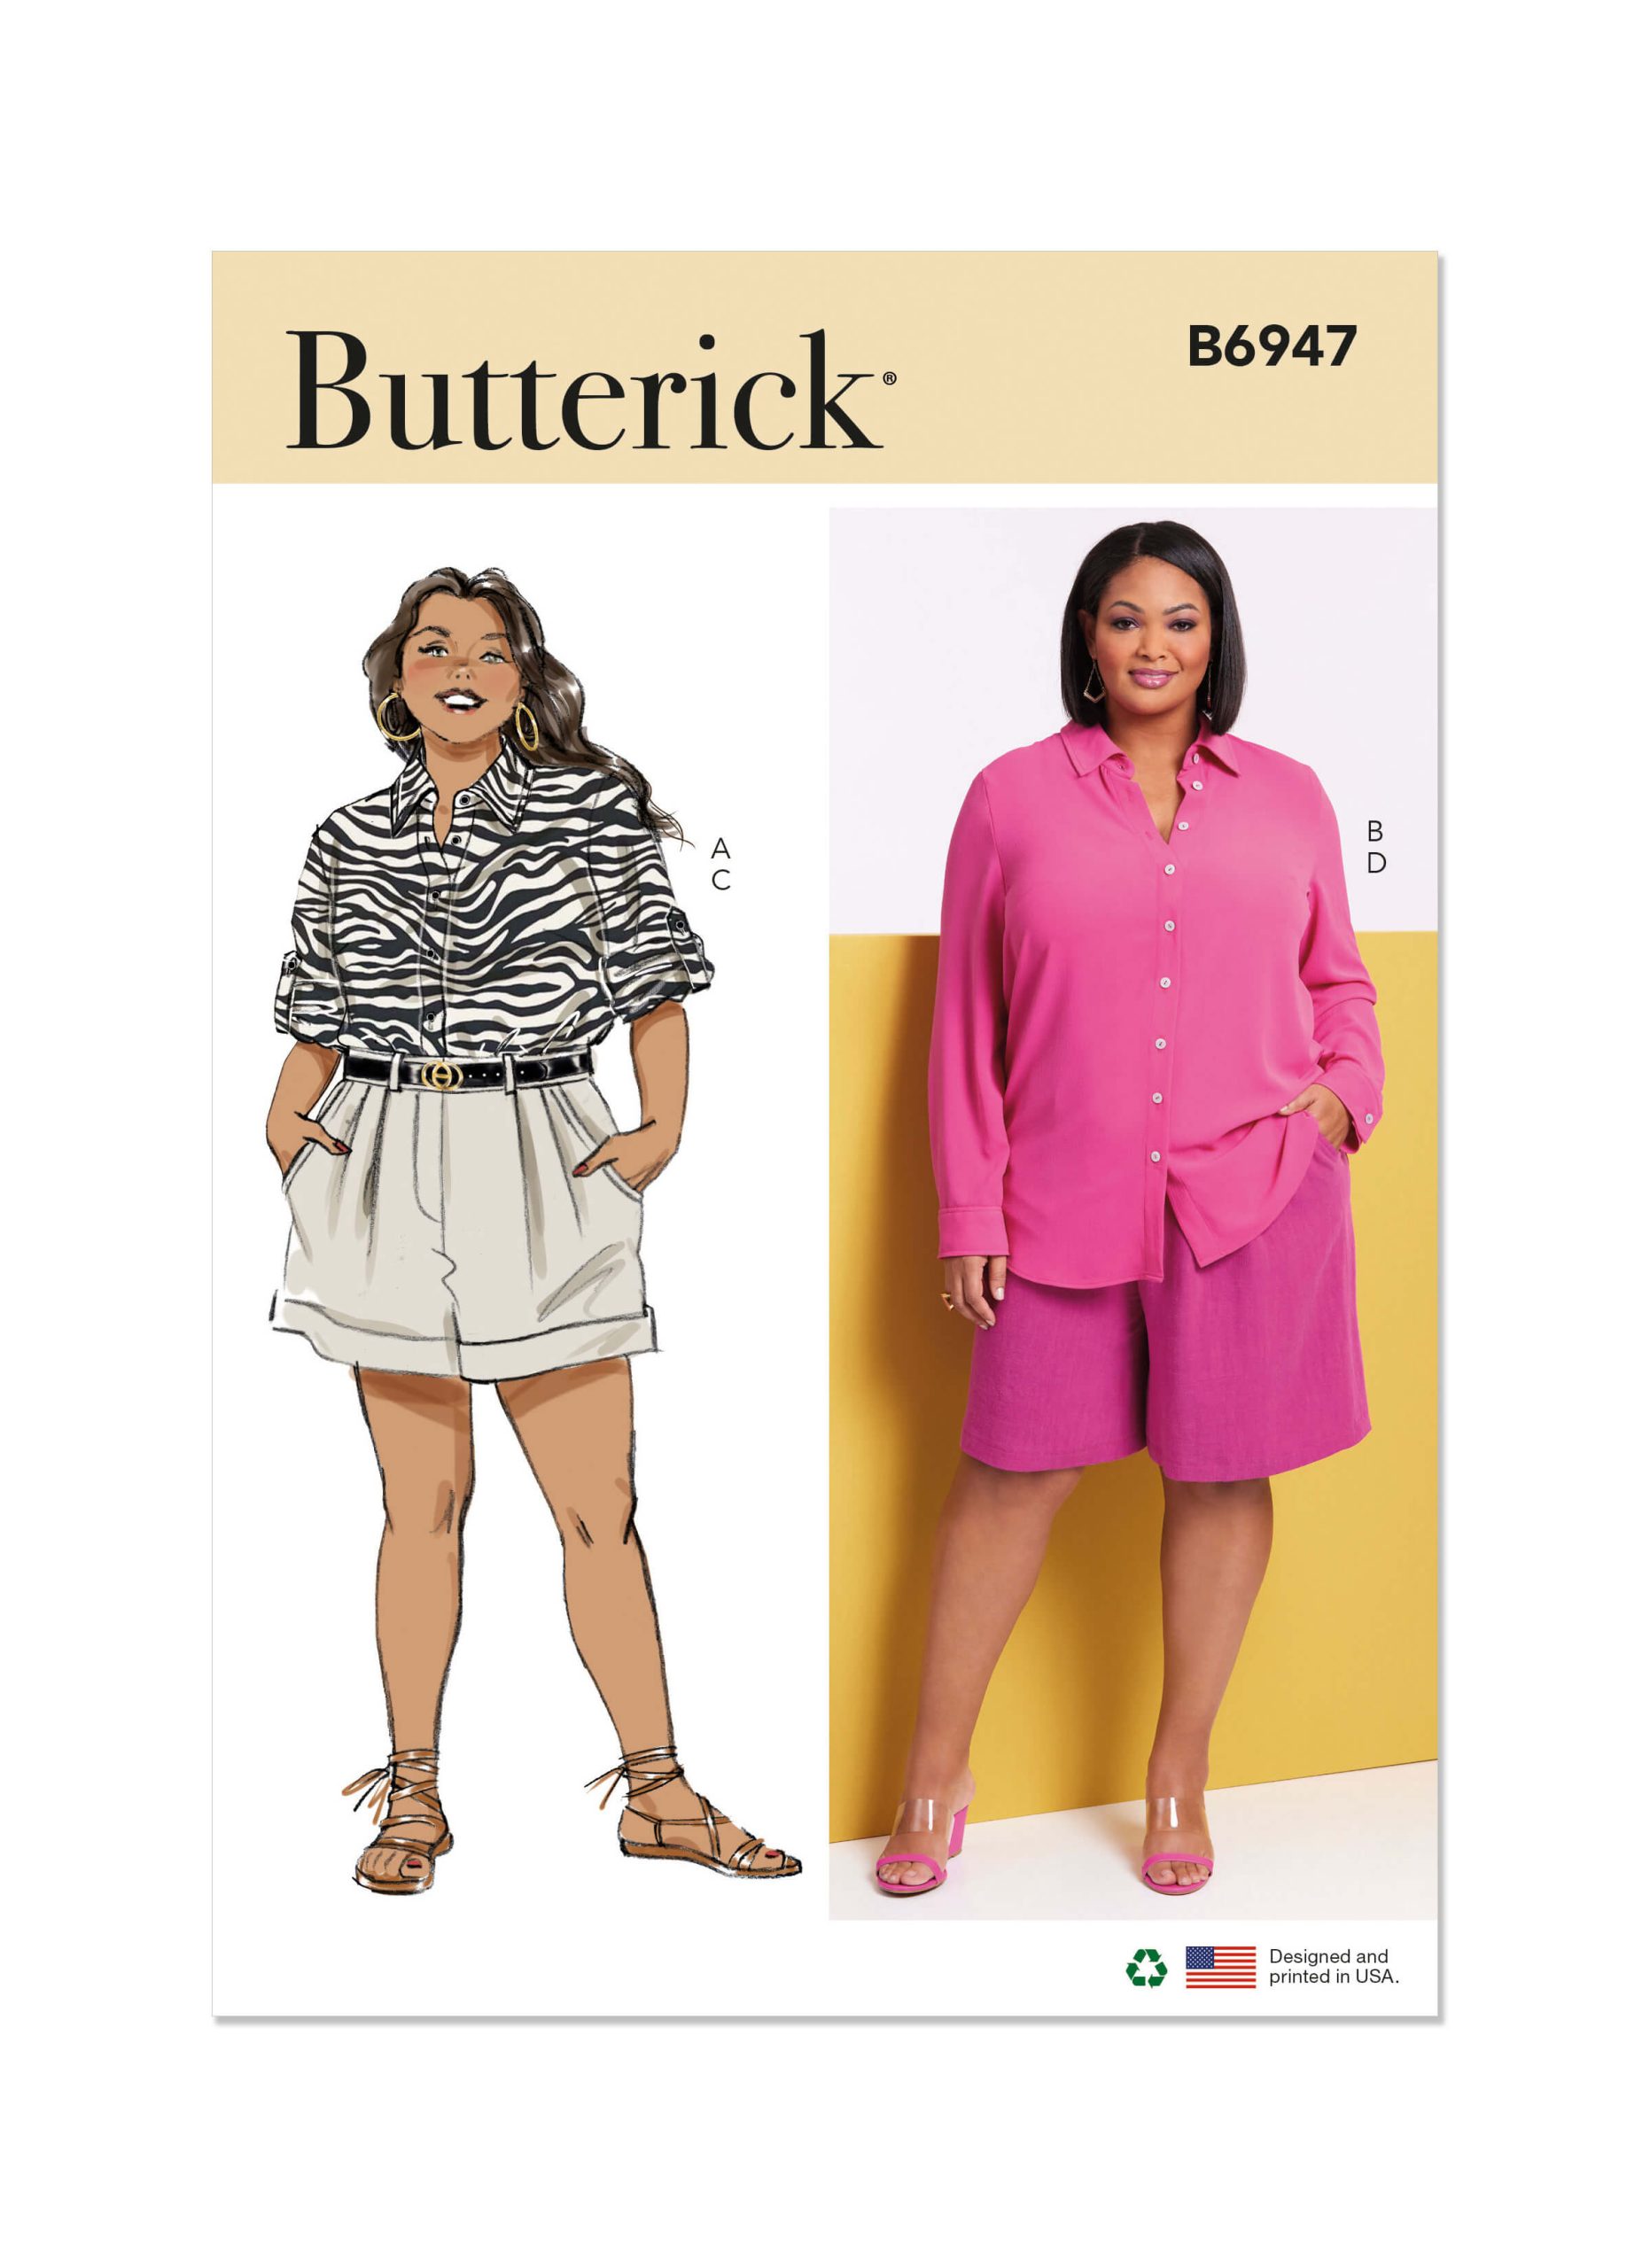 Butterick Sewing Pattern B6947 Women's Shirts and Shorts